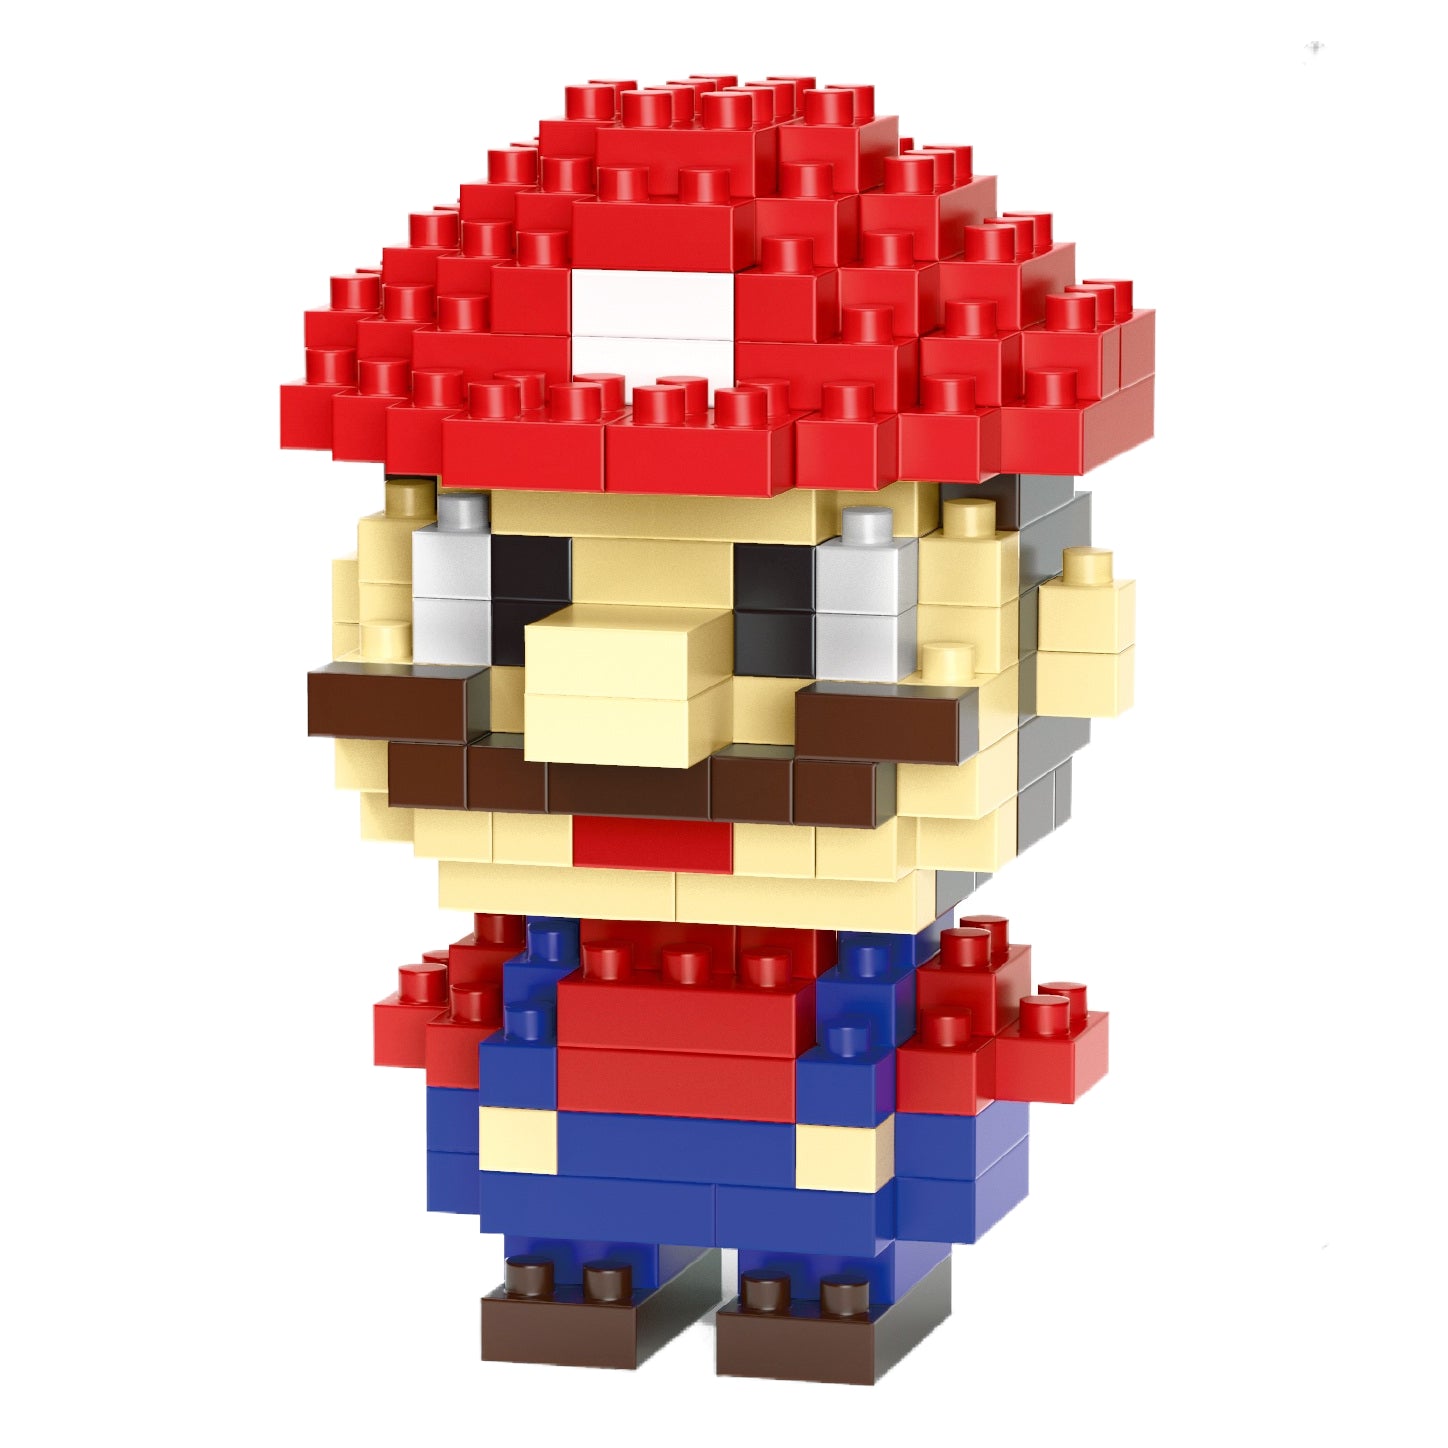 Mario building blocks